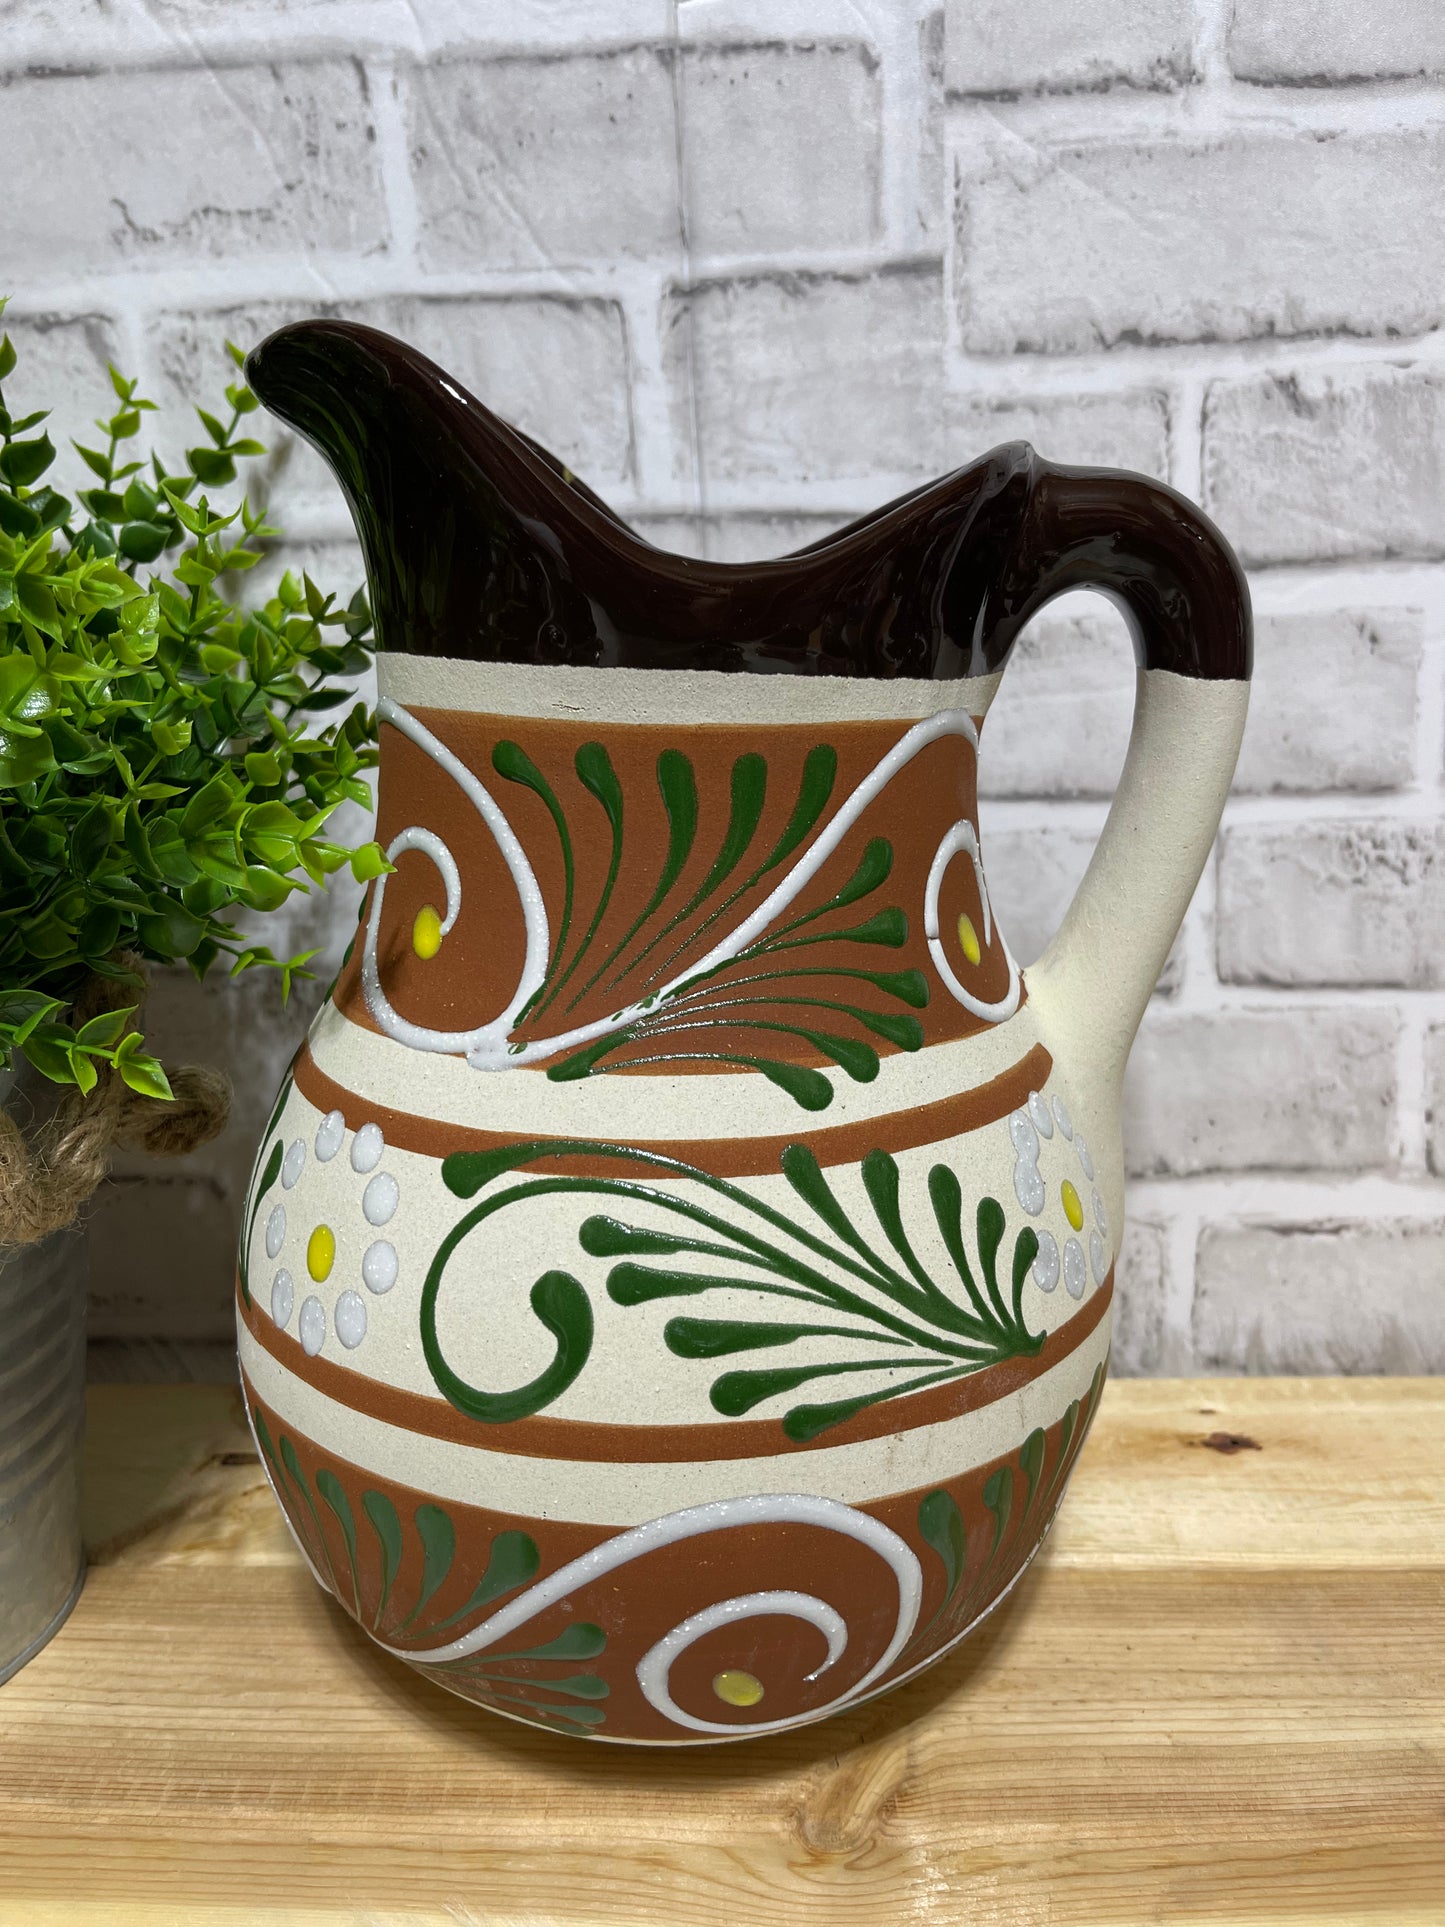 Mexican pottery ceramic/terracotta jar-pitcher/jarra de barro